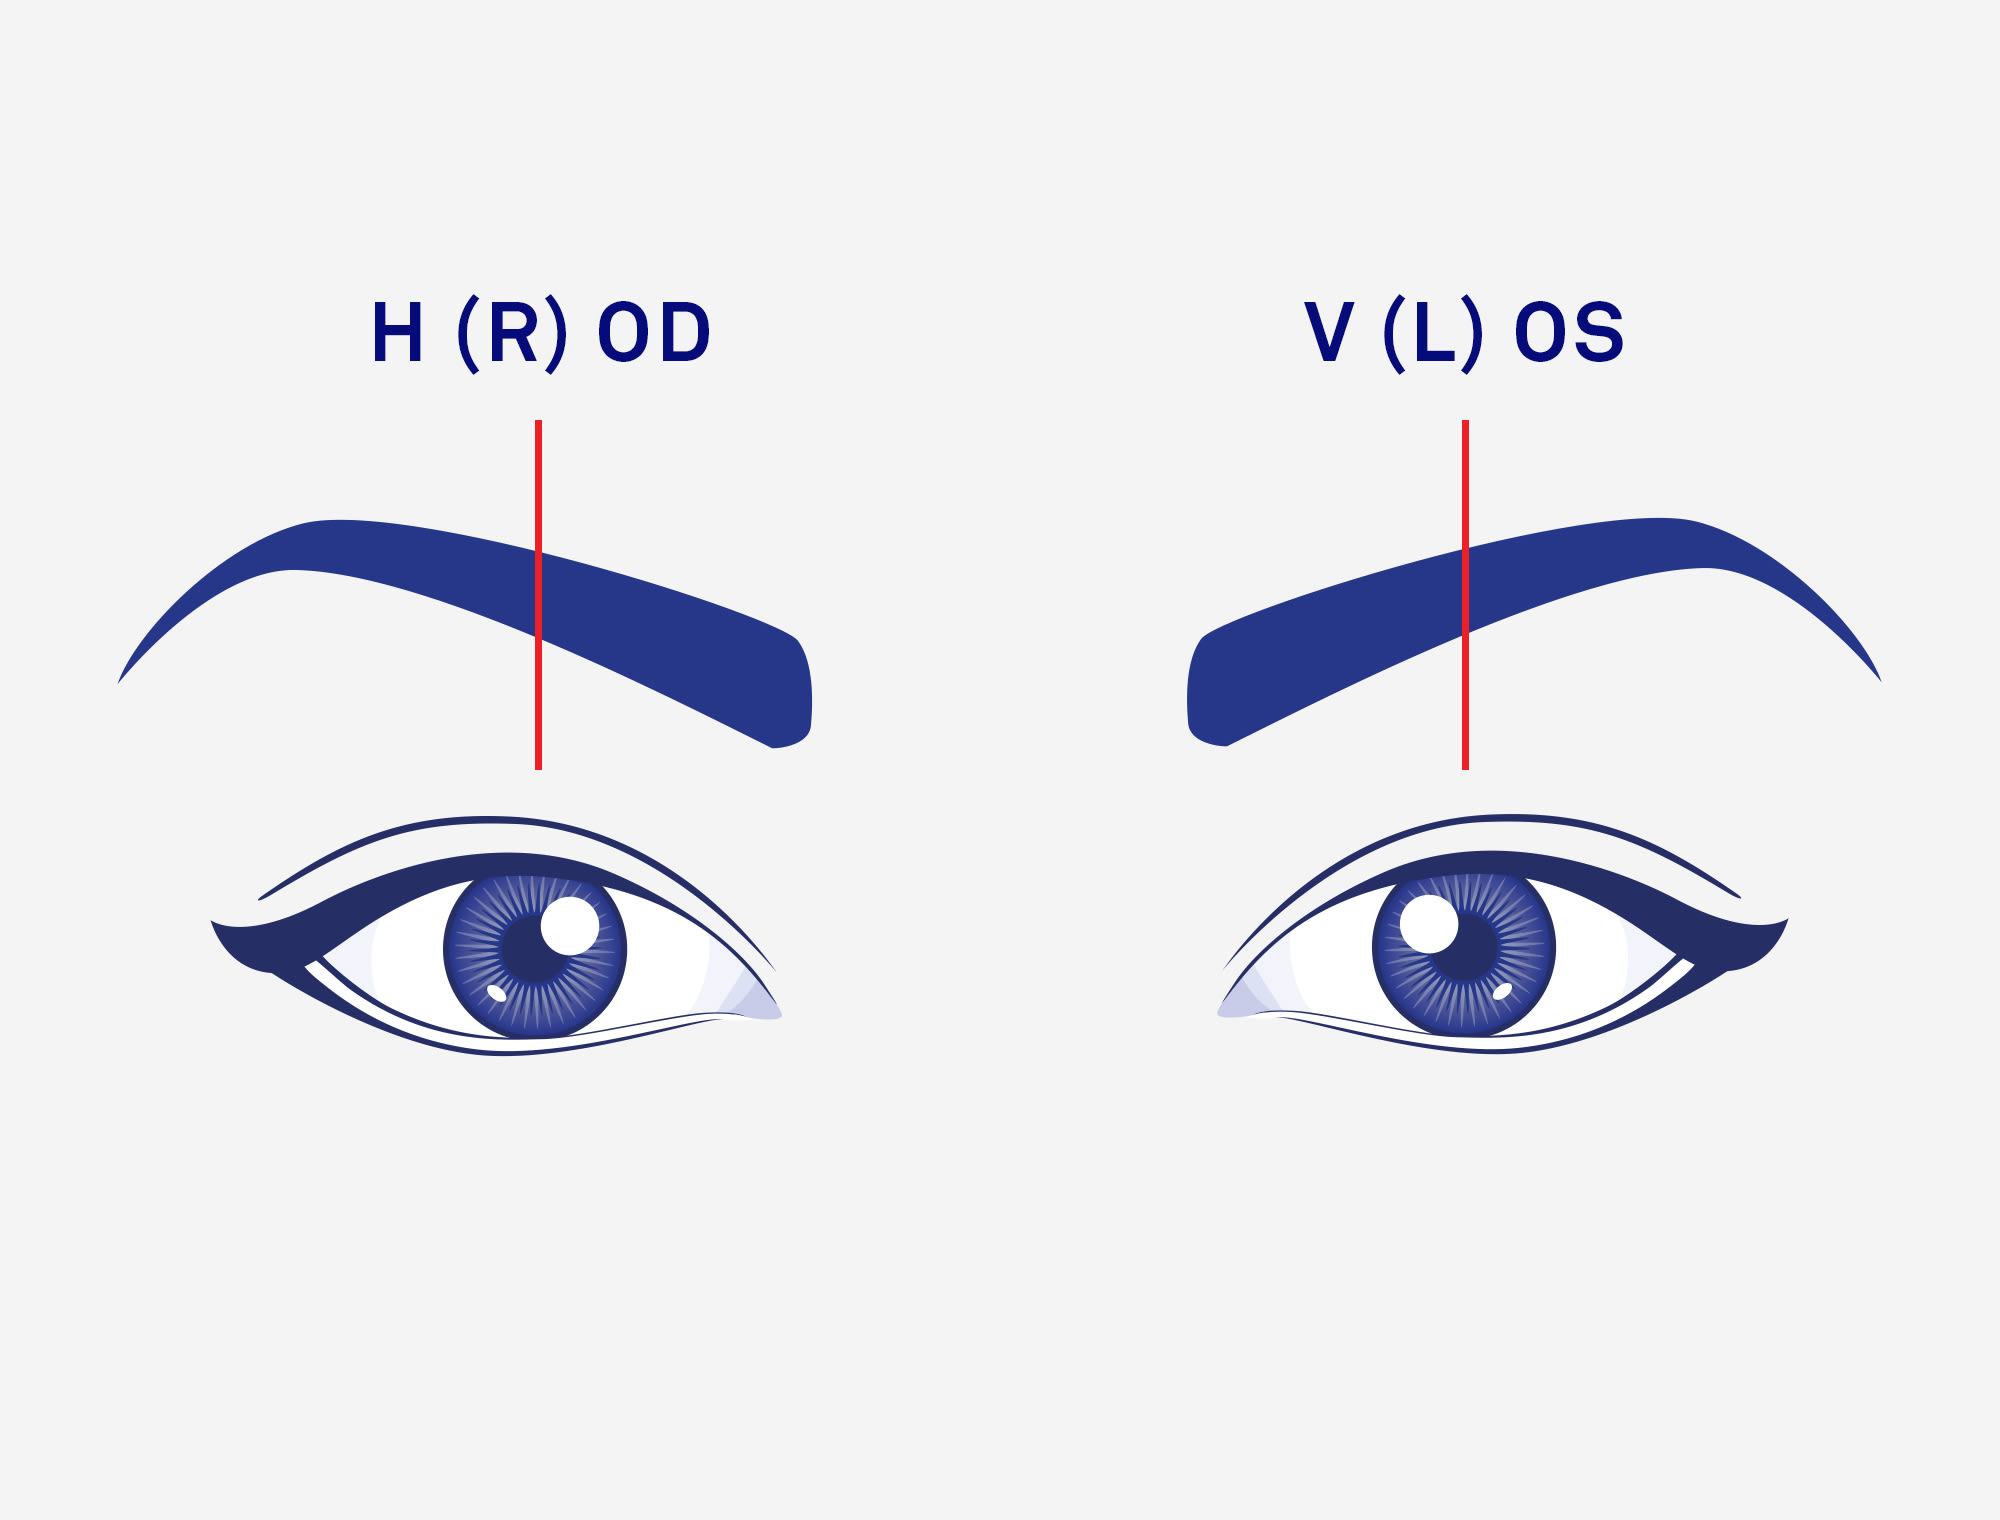 Teckning av ögon som beskriver höger och vänster öga.